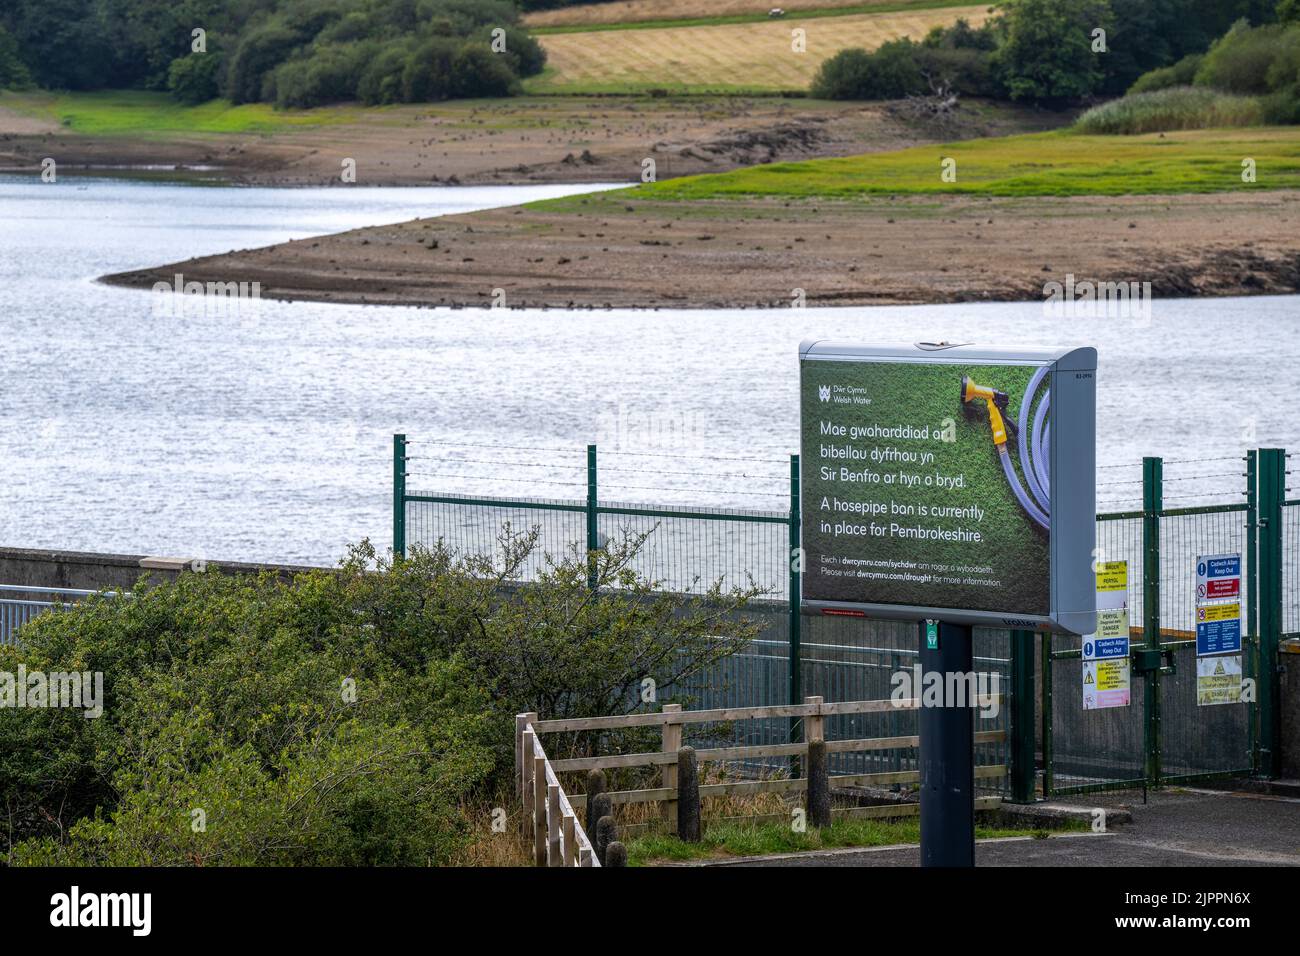 In Teilen von Mittel- und Südwales wird die Dürre erklärt, als das Verbot der Pembrokeshire-Rohrleitung in Kraft tritt.im Bild ist der Stausee Llys y Fran zu sehen. Stockfoto